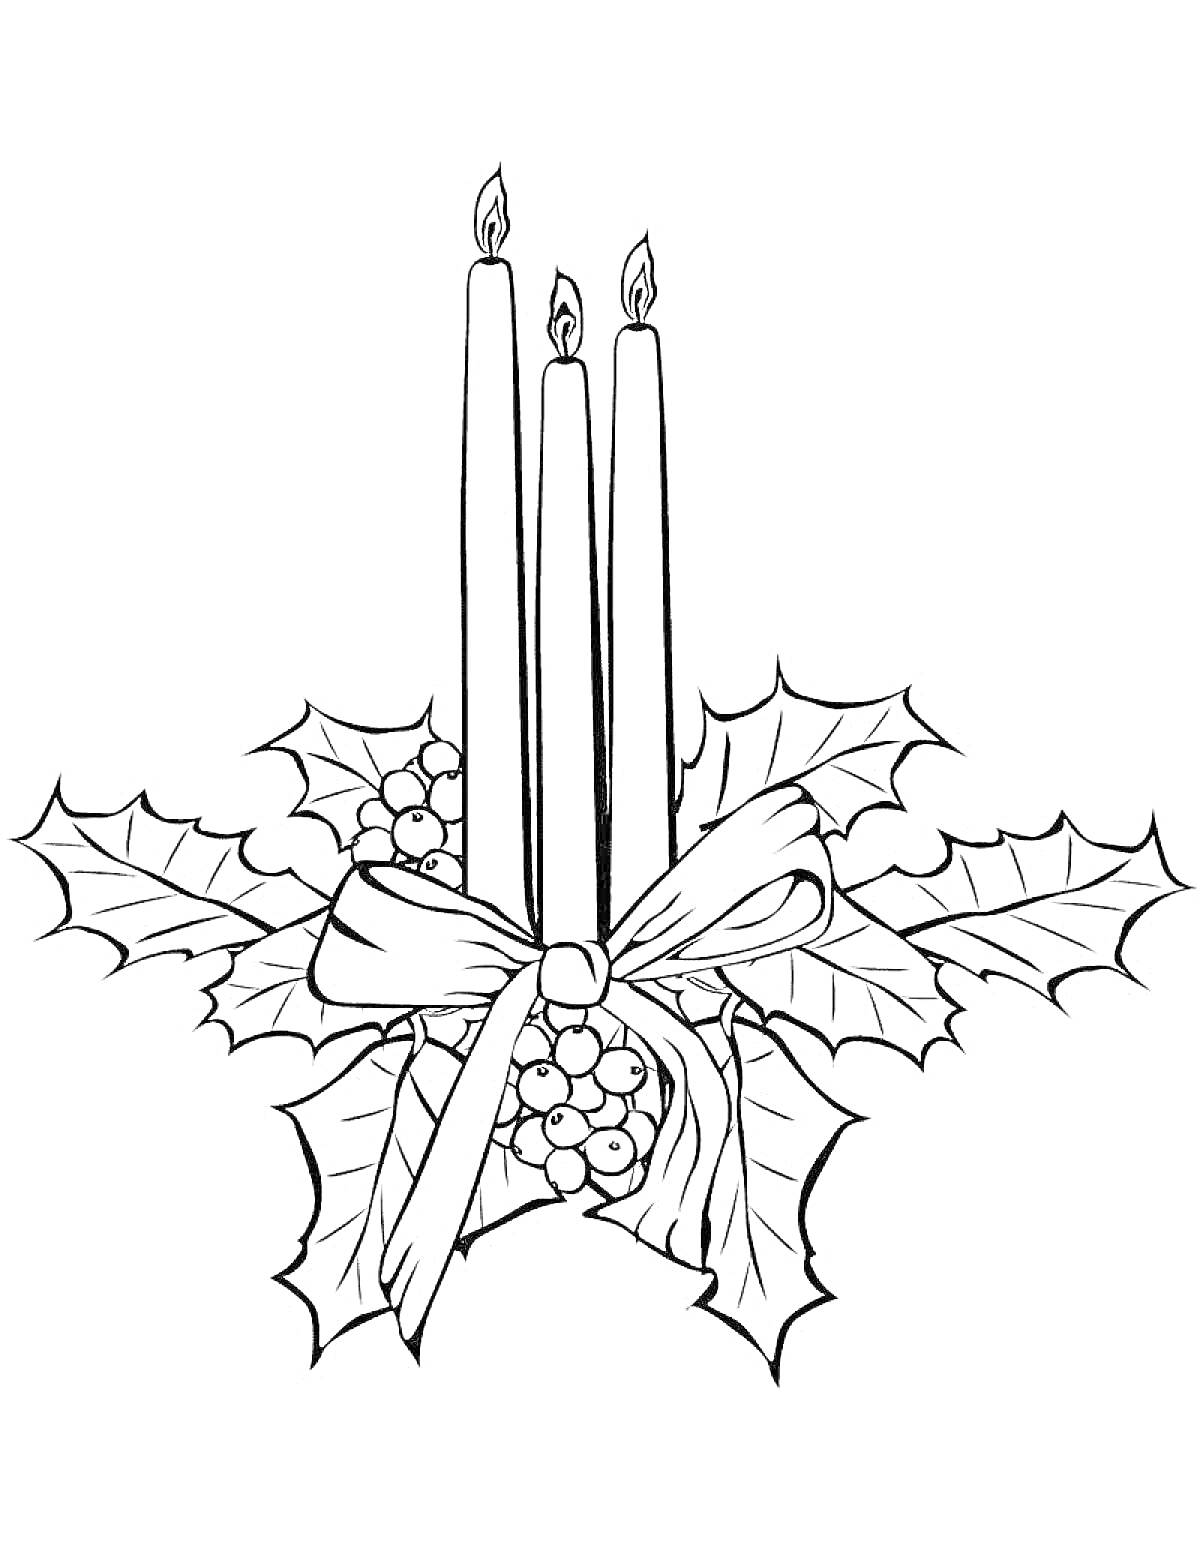 Раскраска Три свечи с пылающими огоньками, украшенные листьями остролиста, ягодами и бантом